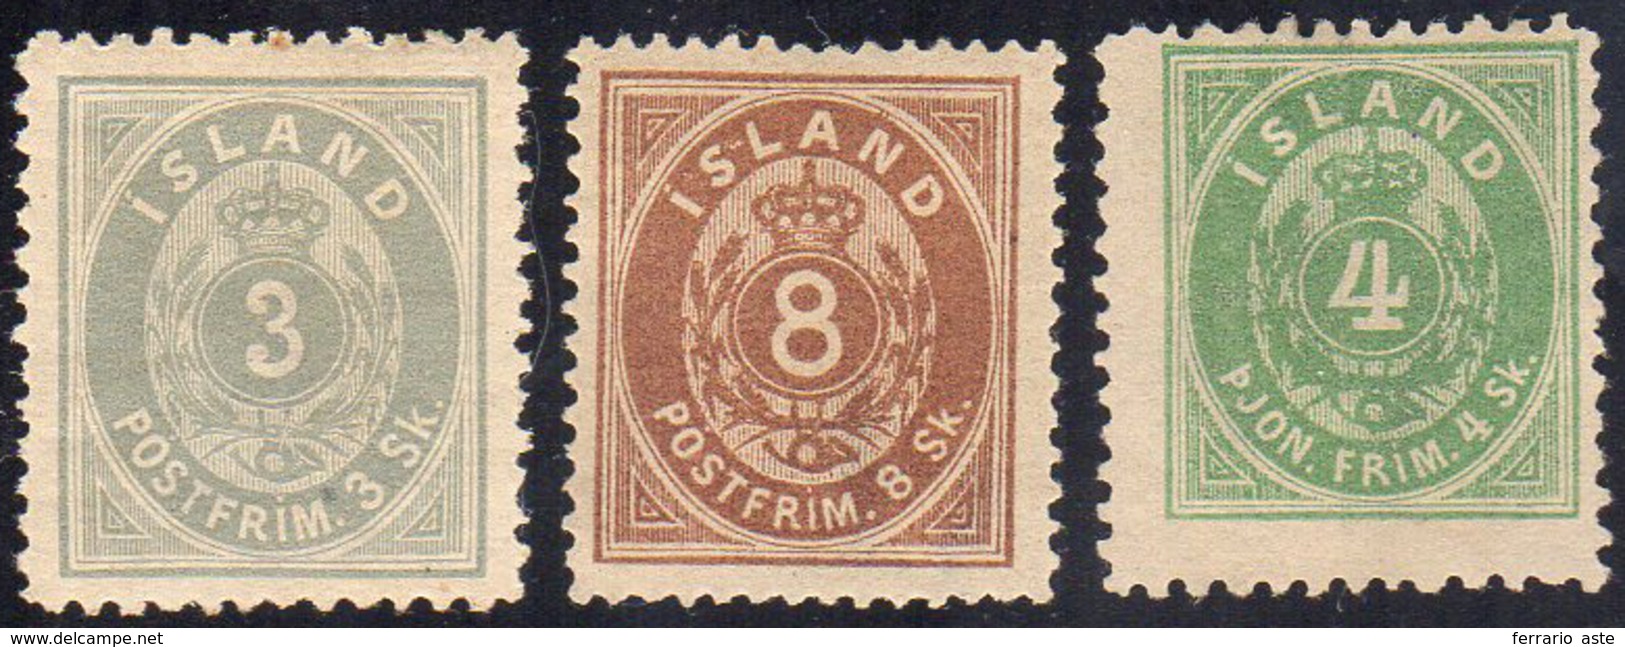 ISLANDA 1873 - 3 S. Grigio, 8 S. Bruno, 4 S. Verde Servizio (2,4,S.1A), Nuovi, Gomma Originale, Perf... - Autres - Europe